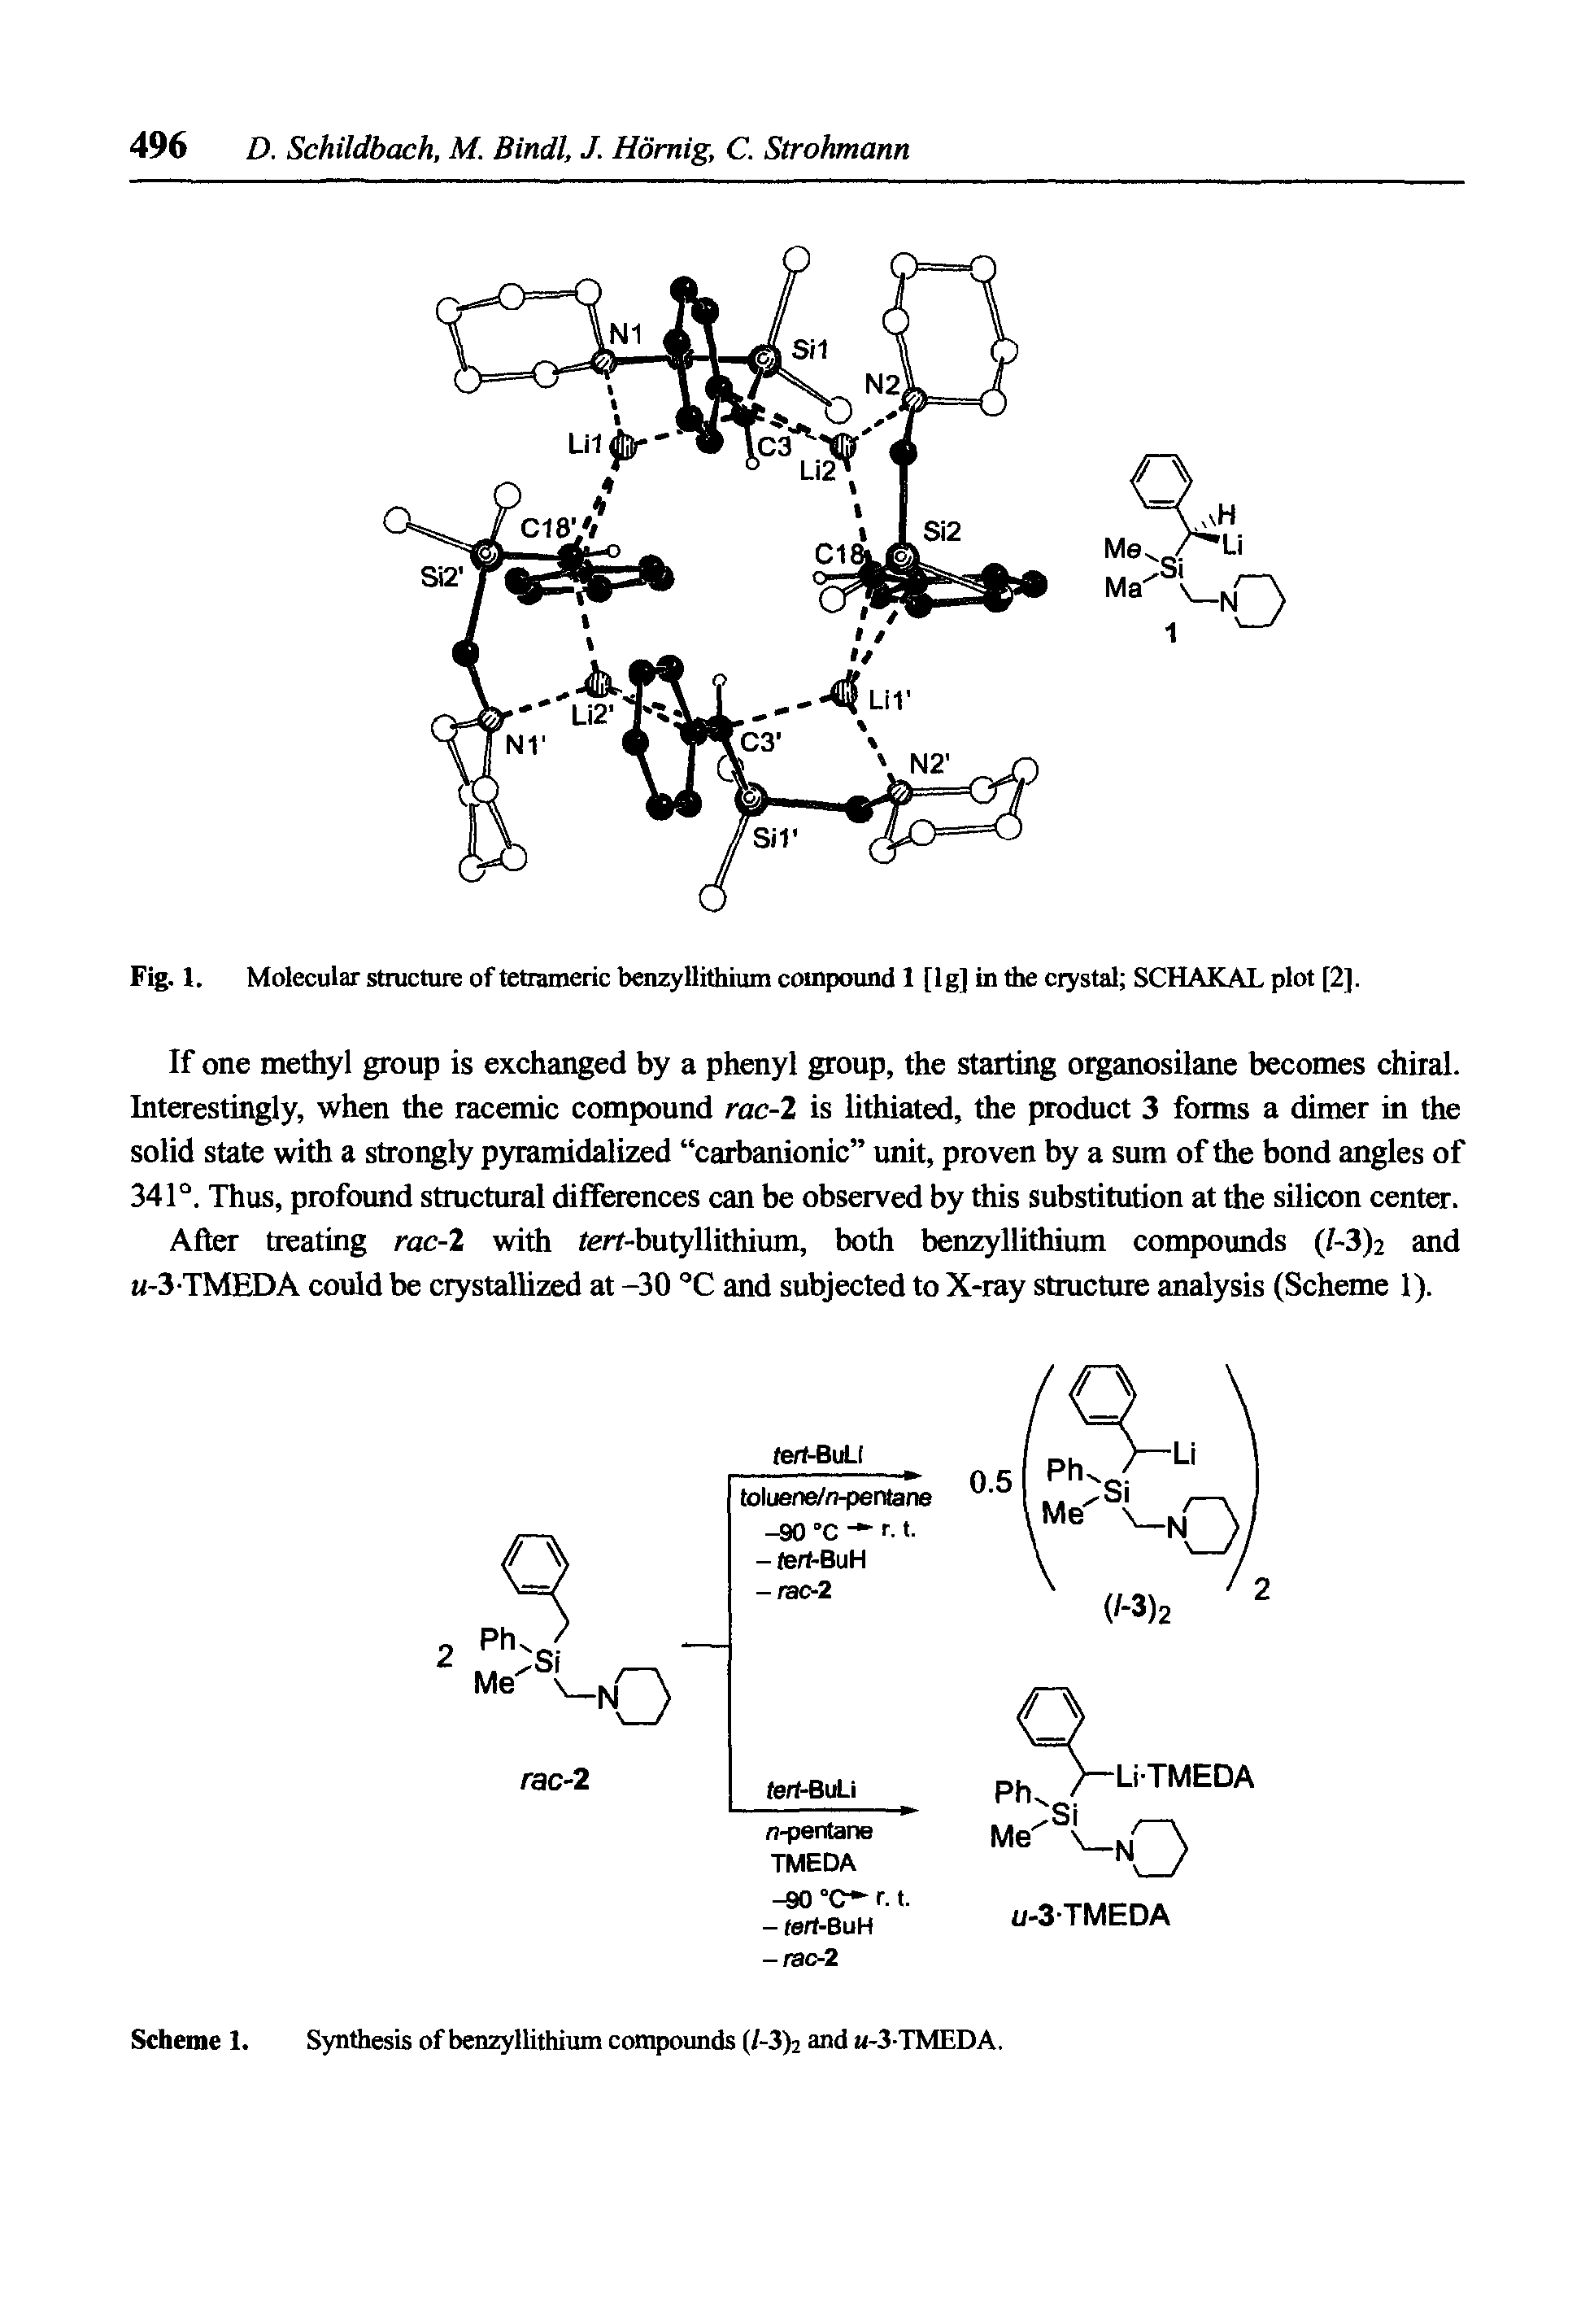 Fig. 1. Molecular structure of tetiameric benzyllithium compound 1 [Ig] in the erystsd SCHAKAL plot [2].